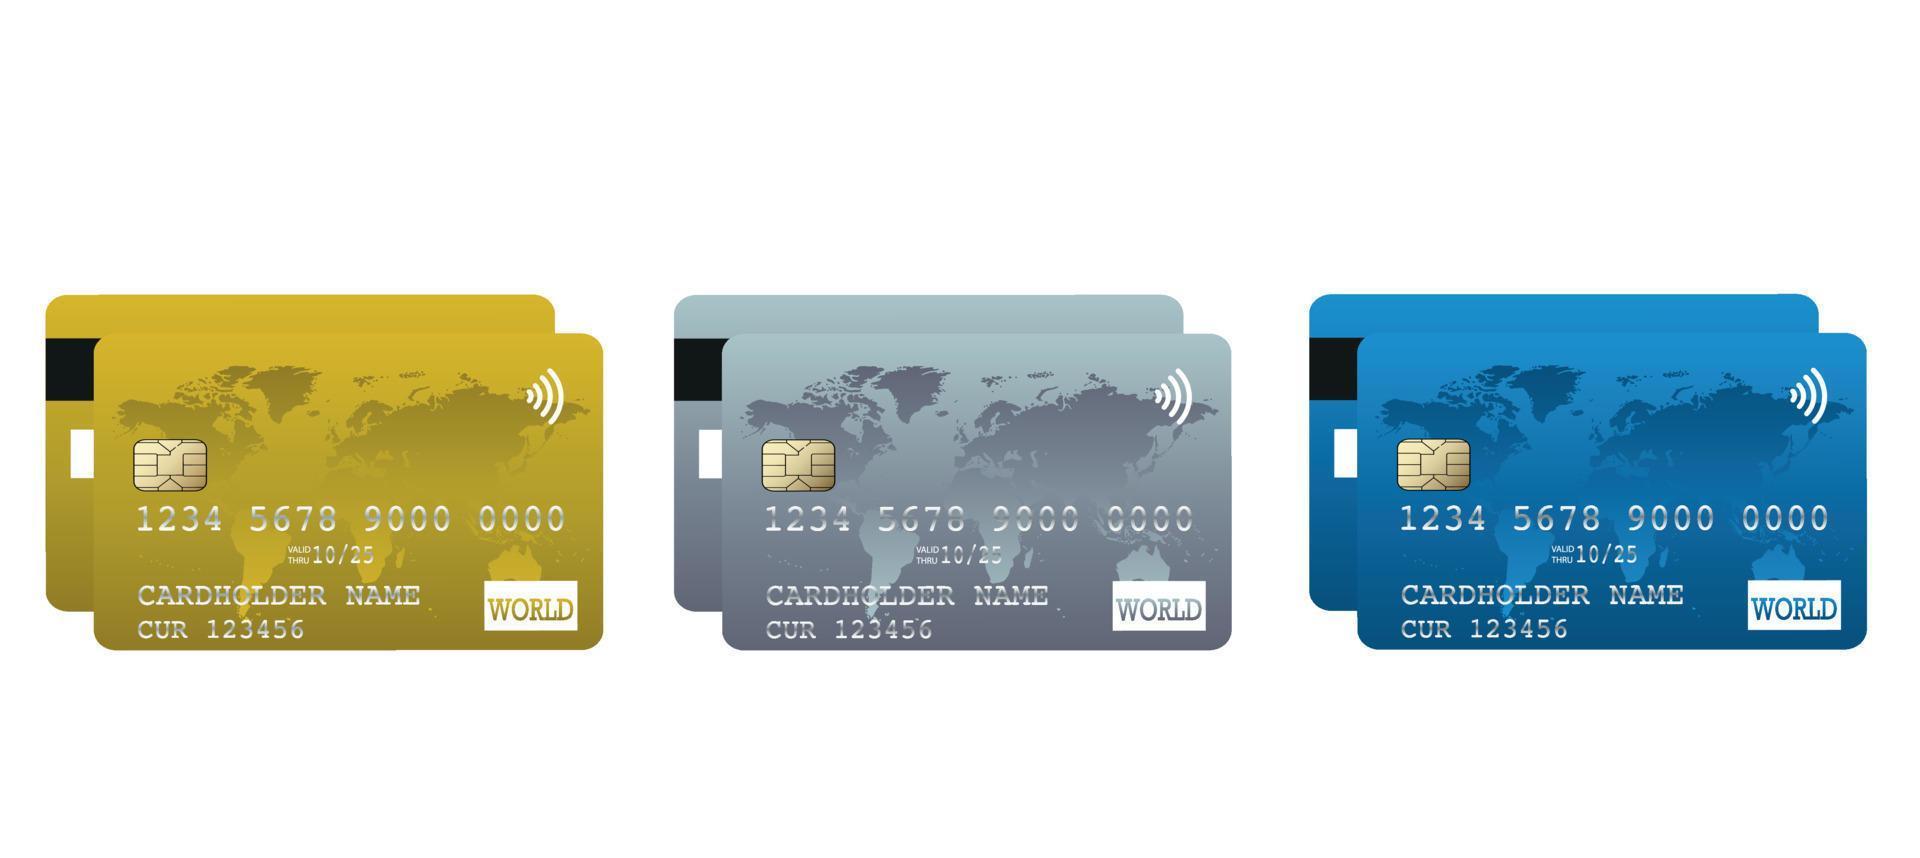 ensemble de cartes bancaires de crédit en plastique multicolores réalistes isolées sur fond blanc. illustration vectorielle vecteur